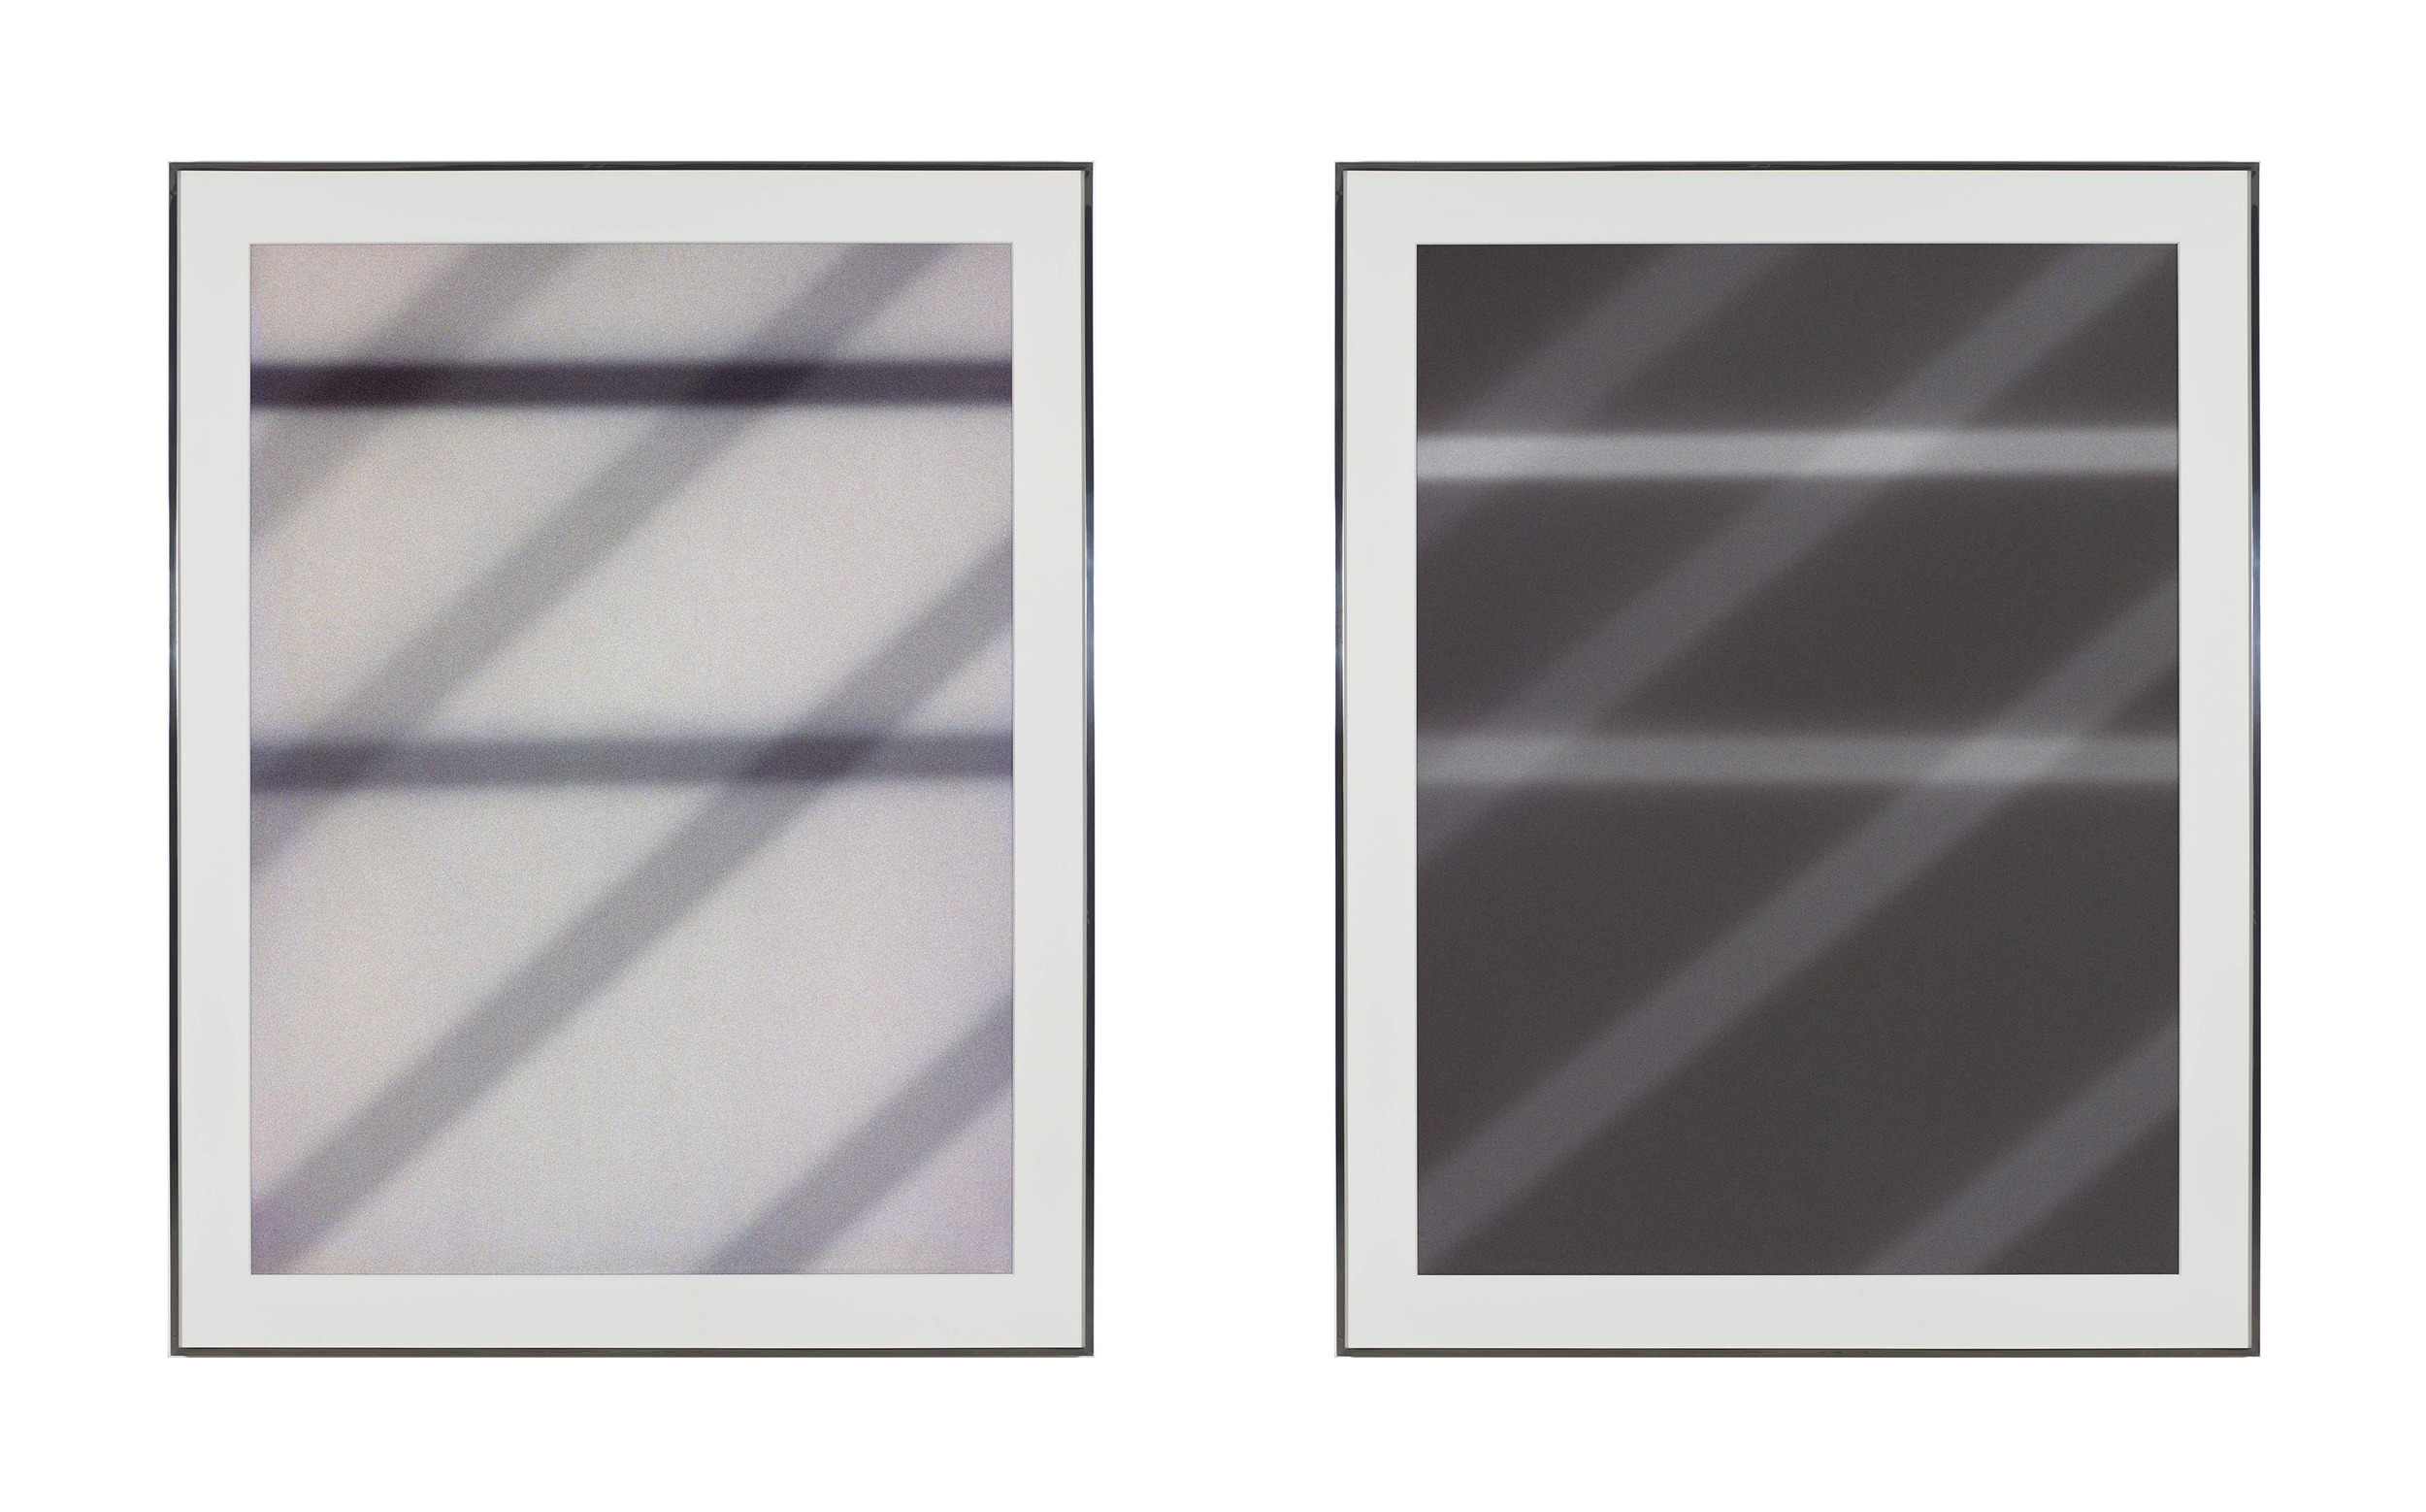   Transparency (Positive) [Fujichrome RDPIII Provia 100F Em. No. 05481: April 25–29, 2011 LAX/SFO/PEK PEK/SFO/LAX];&nbsp;Transparency (Negative) [Kodak Portra 400NC Em. No. 2051: April 25–29, 2011 LAX/SFO/PEK PEK/SFO/LAX]    2011   Epson Ultrachrome 